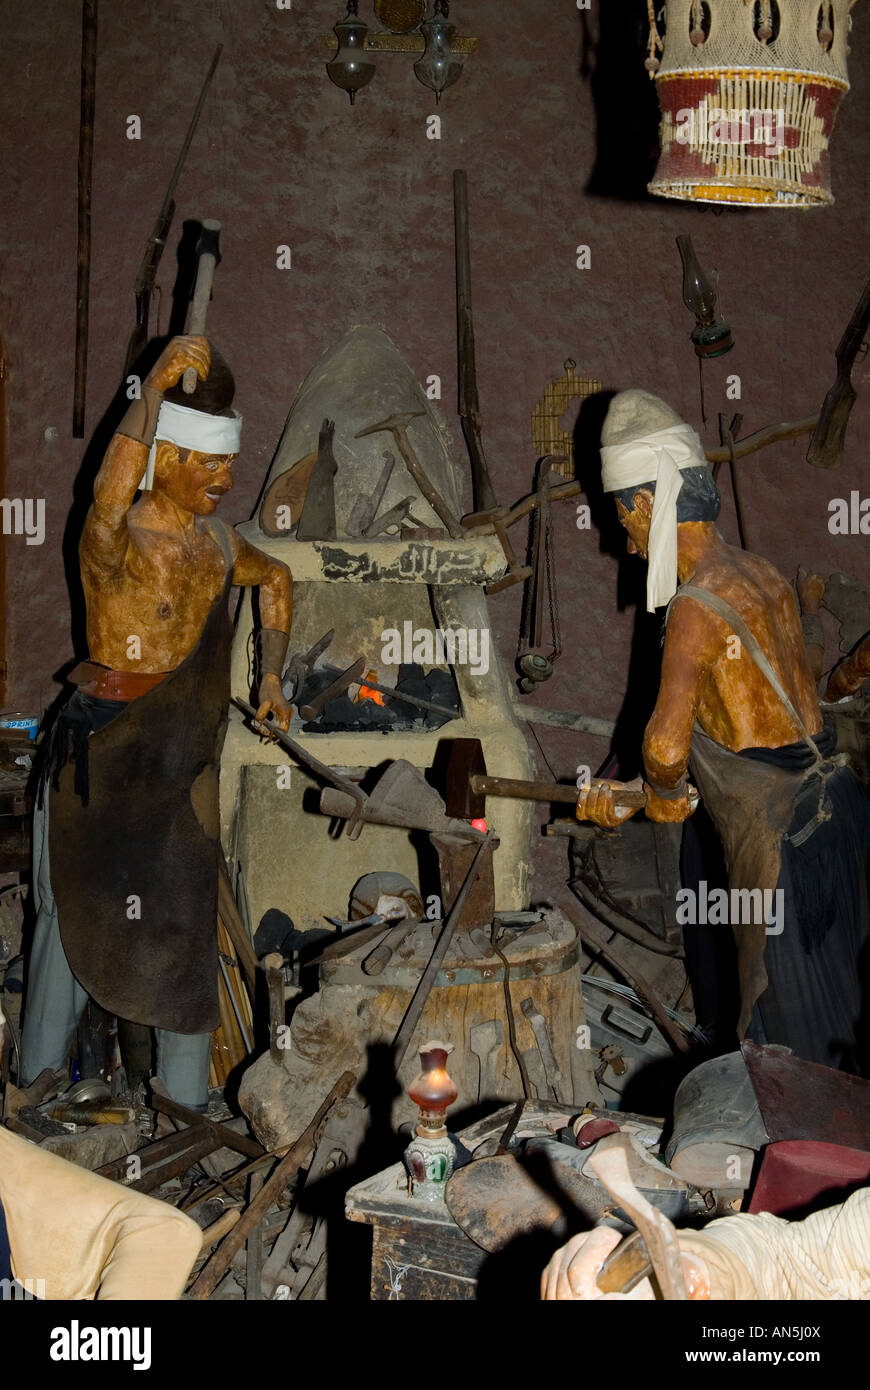 Des statues des forgerons de l'homme au travail dans le château de Moussa Liban Moyen Orient Banque D'Images